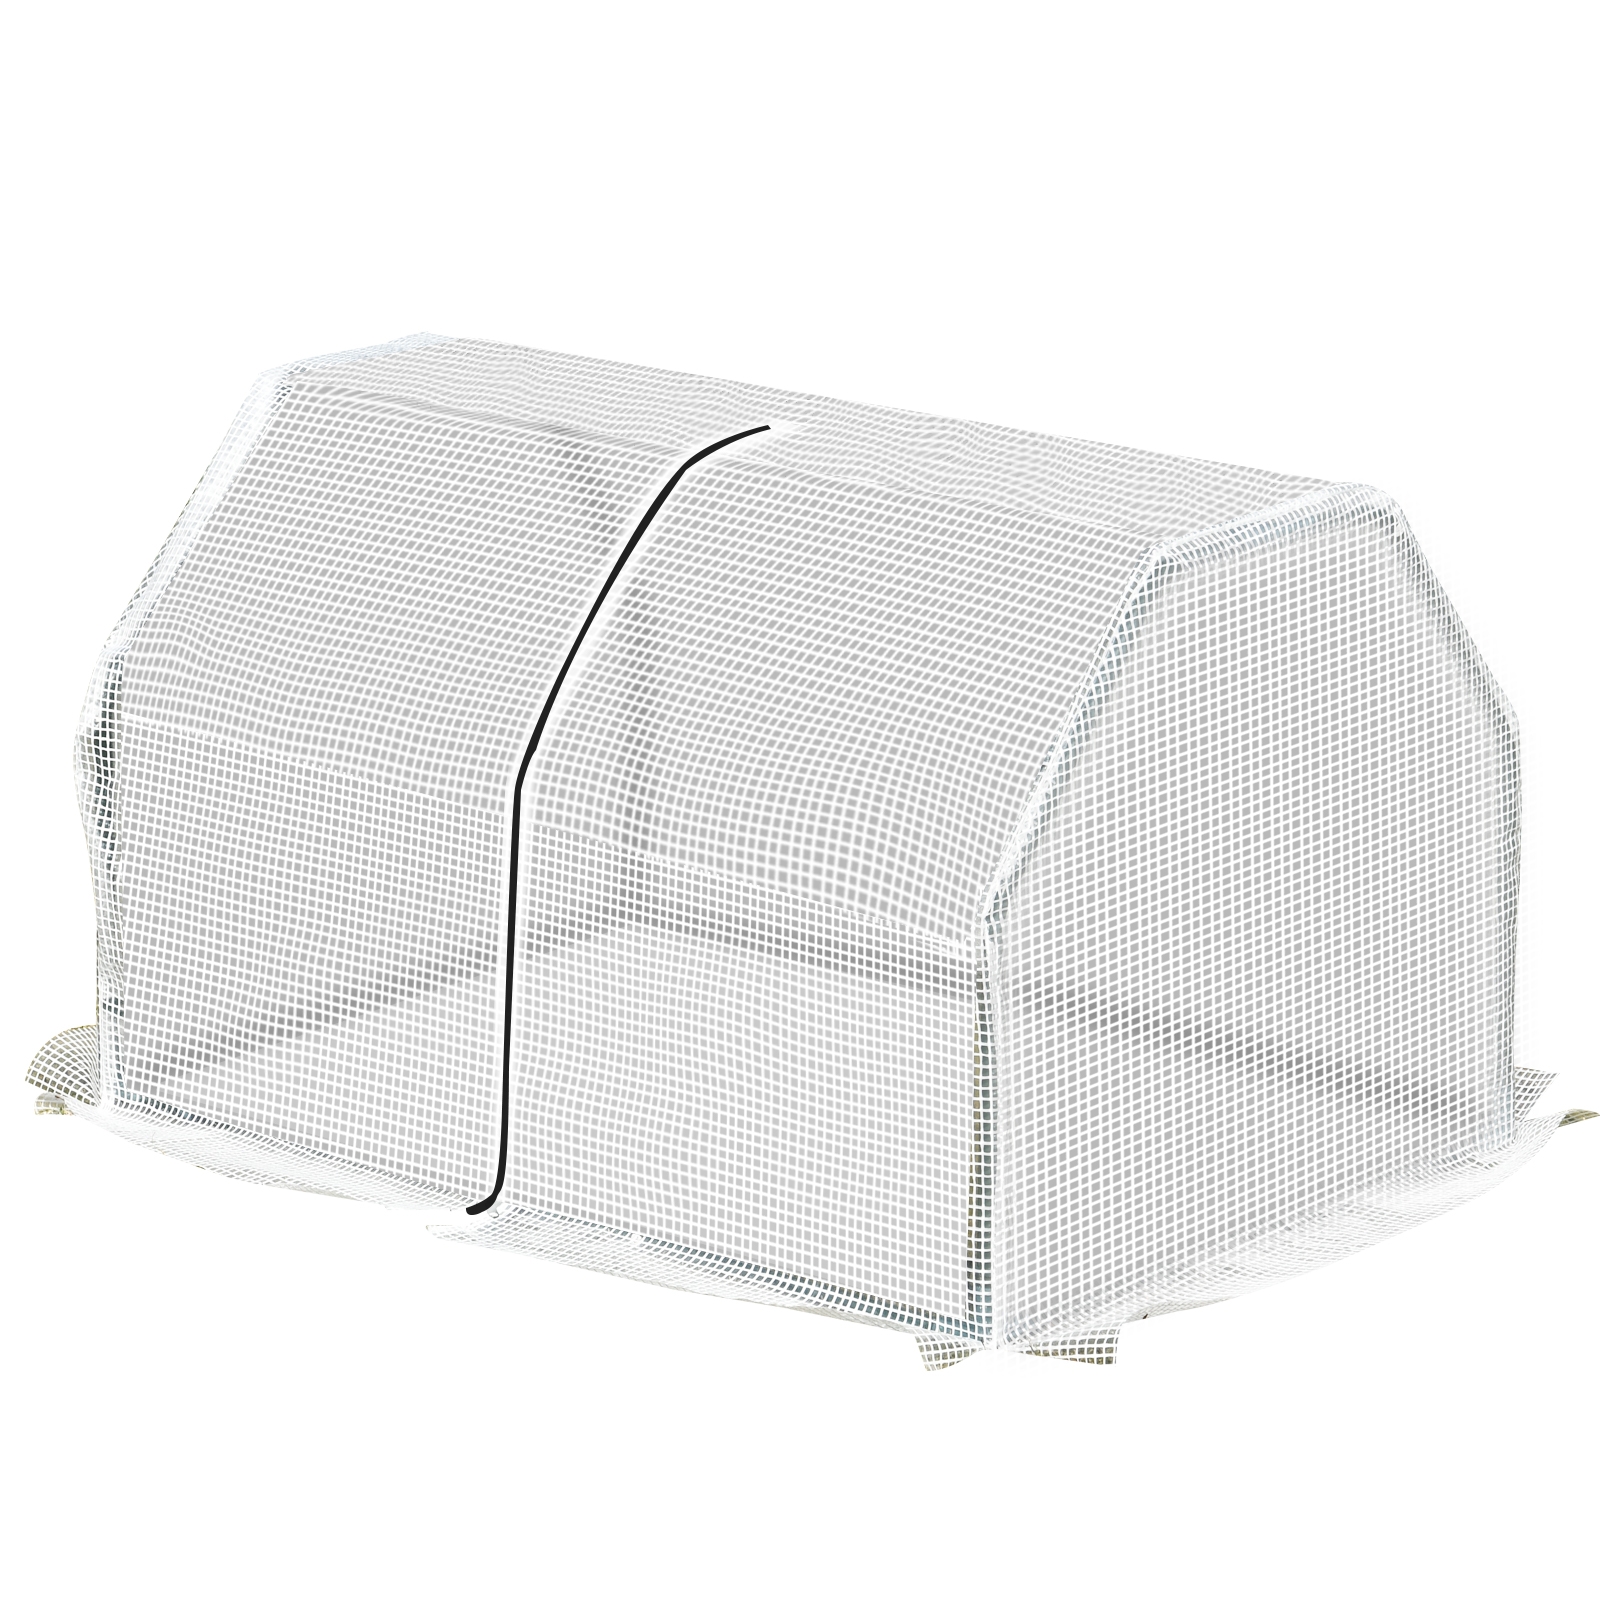 outsunny mini serra da giardino e balcone in plastica pe e acciaio con chiusura a zip, 99x71x60 cm